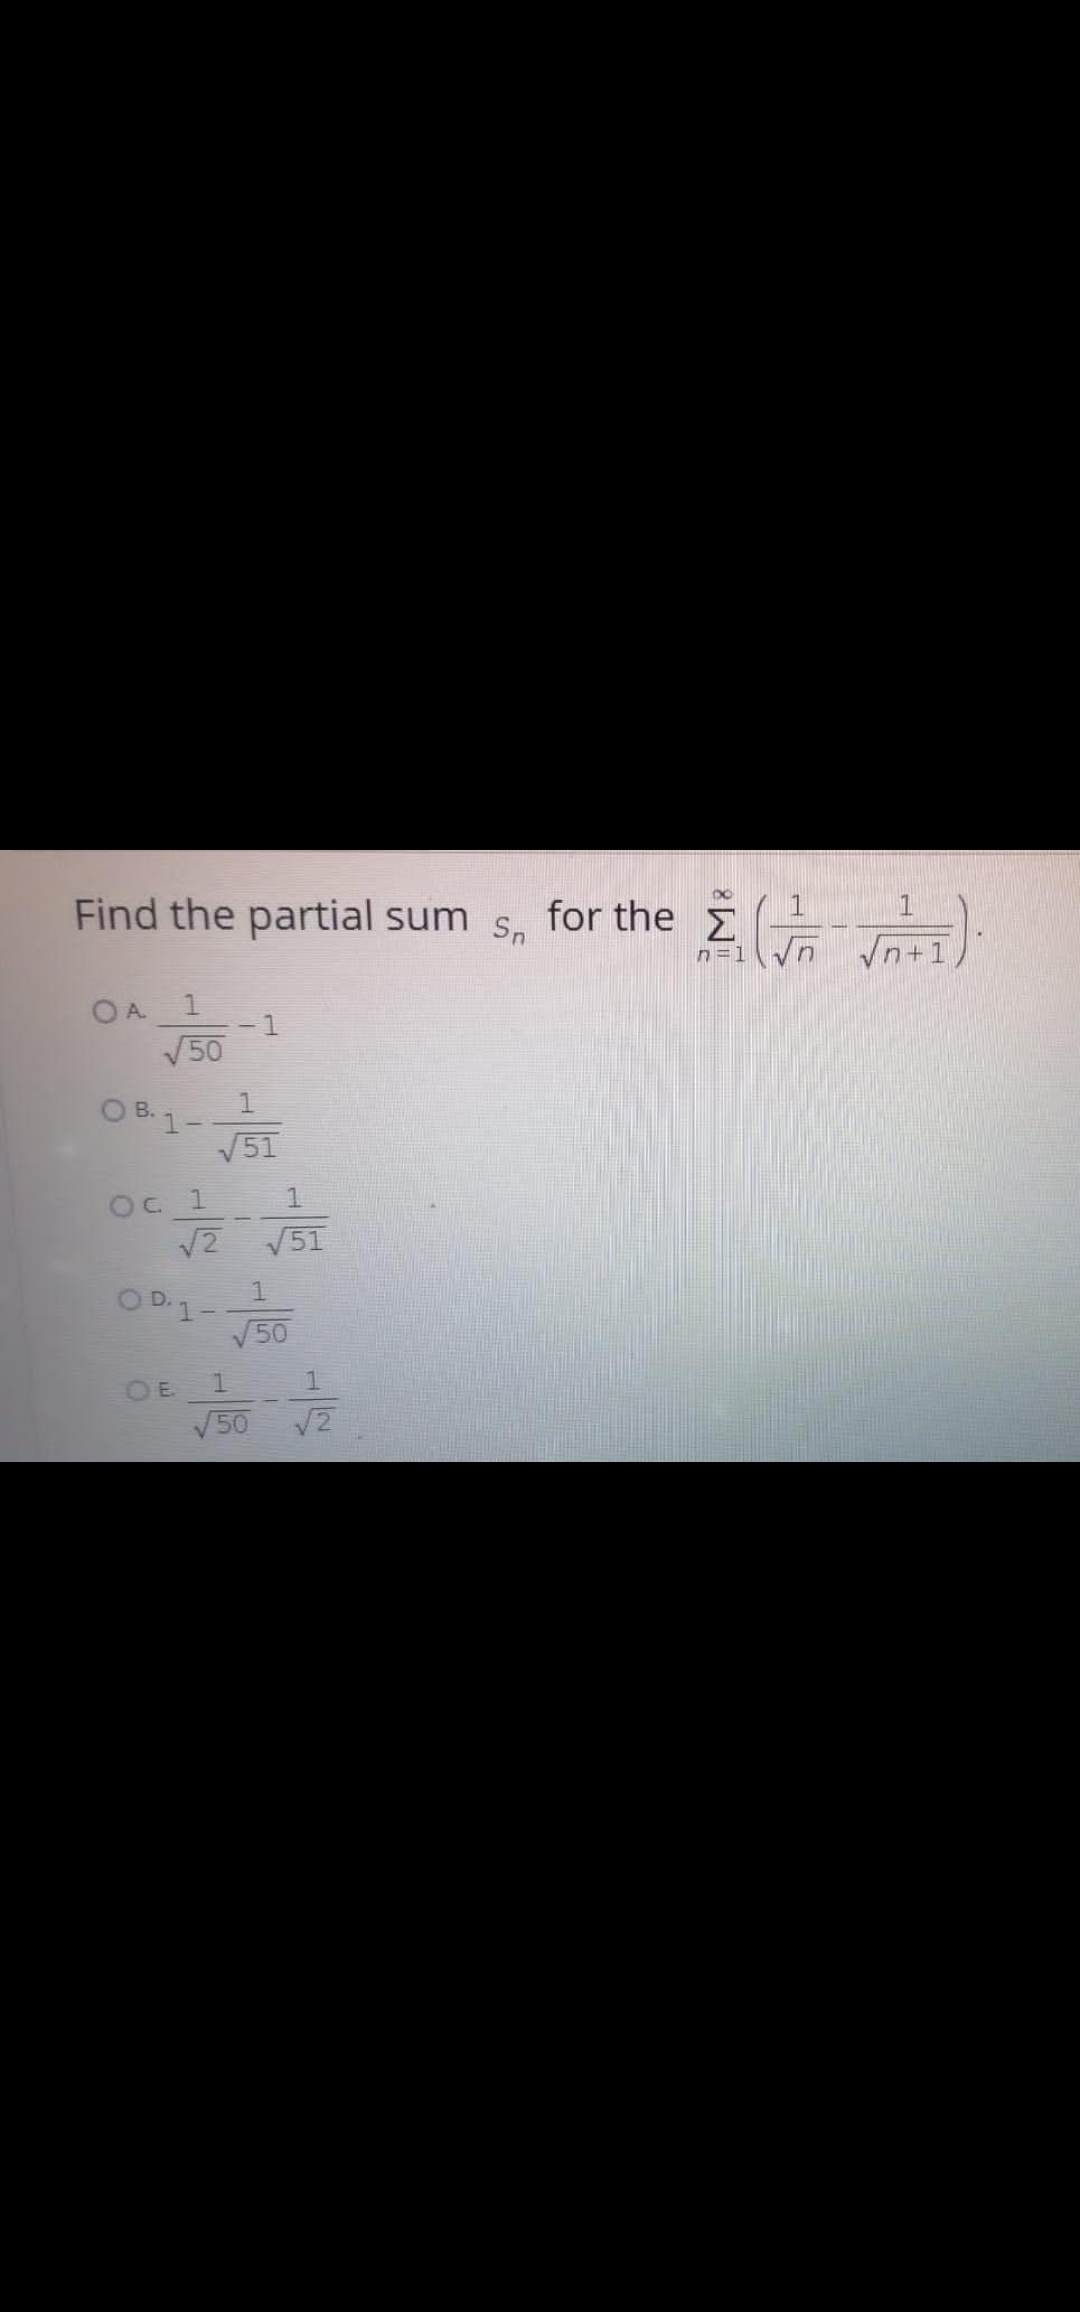 Find the partial sum s, for the =
n=1
1.
1
50
O B. 1-
V51
В.
Oc 1
12
51
O D.1-
50
OE
V50
